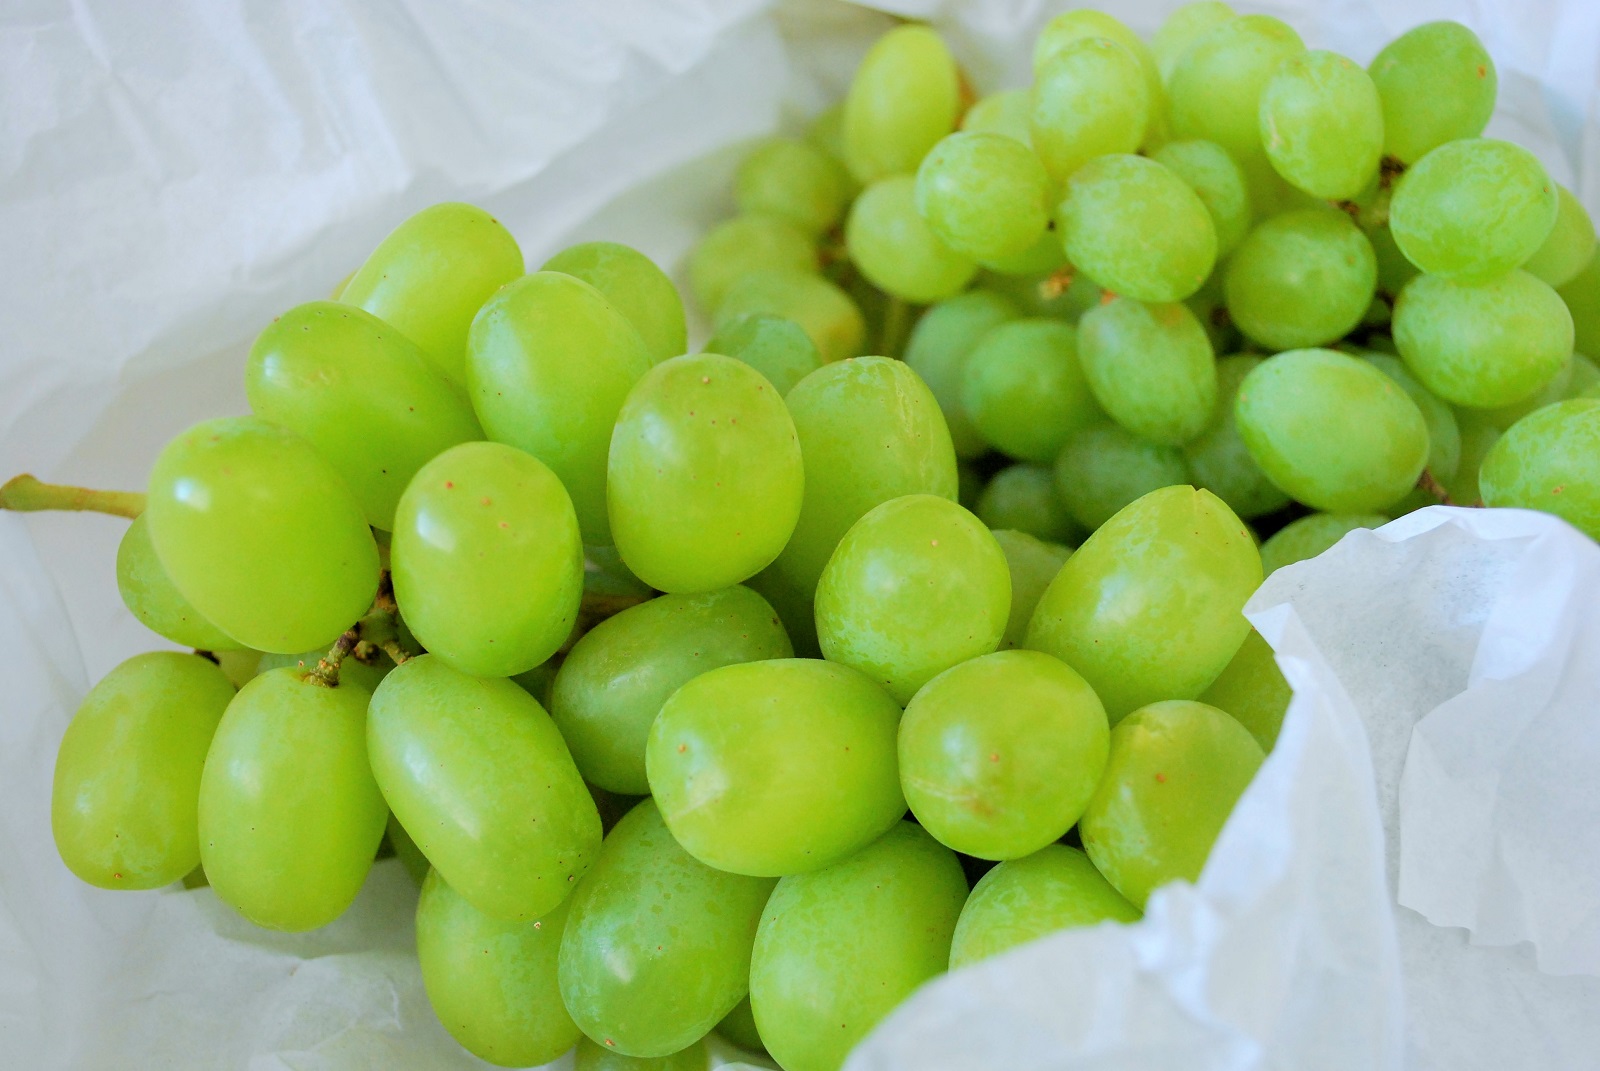 オーストラリアの安くておいしい果物で 美肌 疲労回復 アクティブウーマンブログ